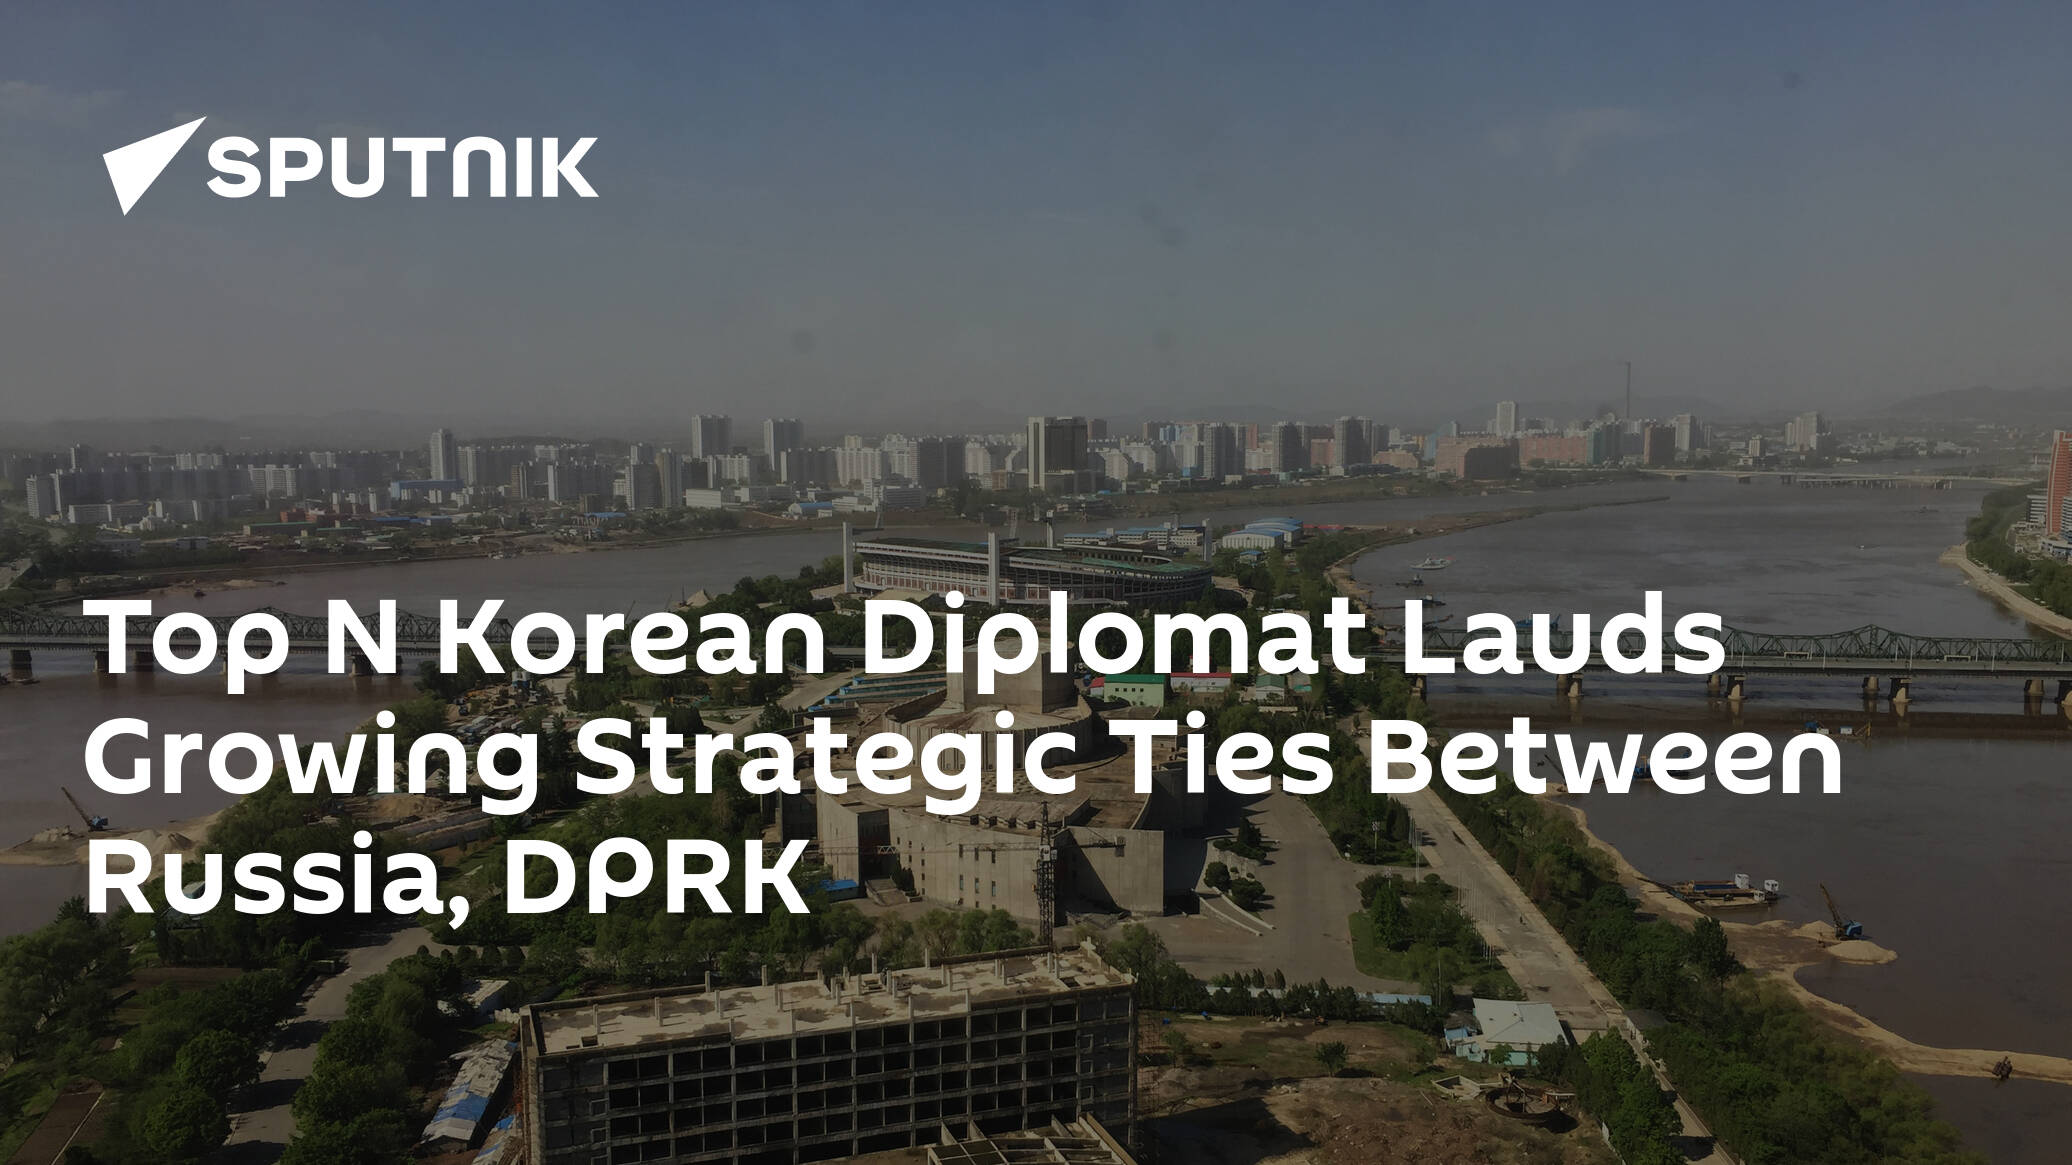 Top N Korean Diplomat Lauds Growing Strategic Ties Between Russia, DPRK